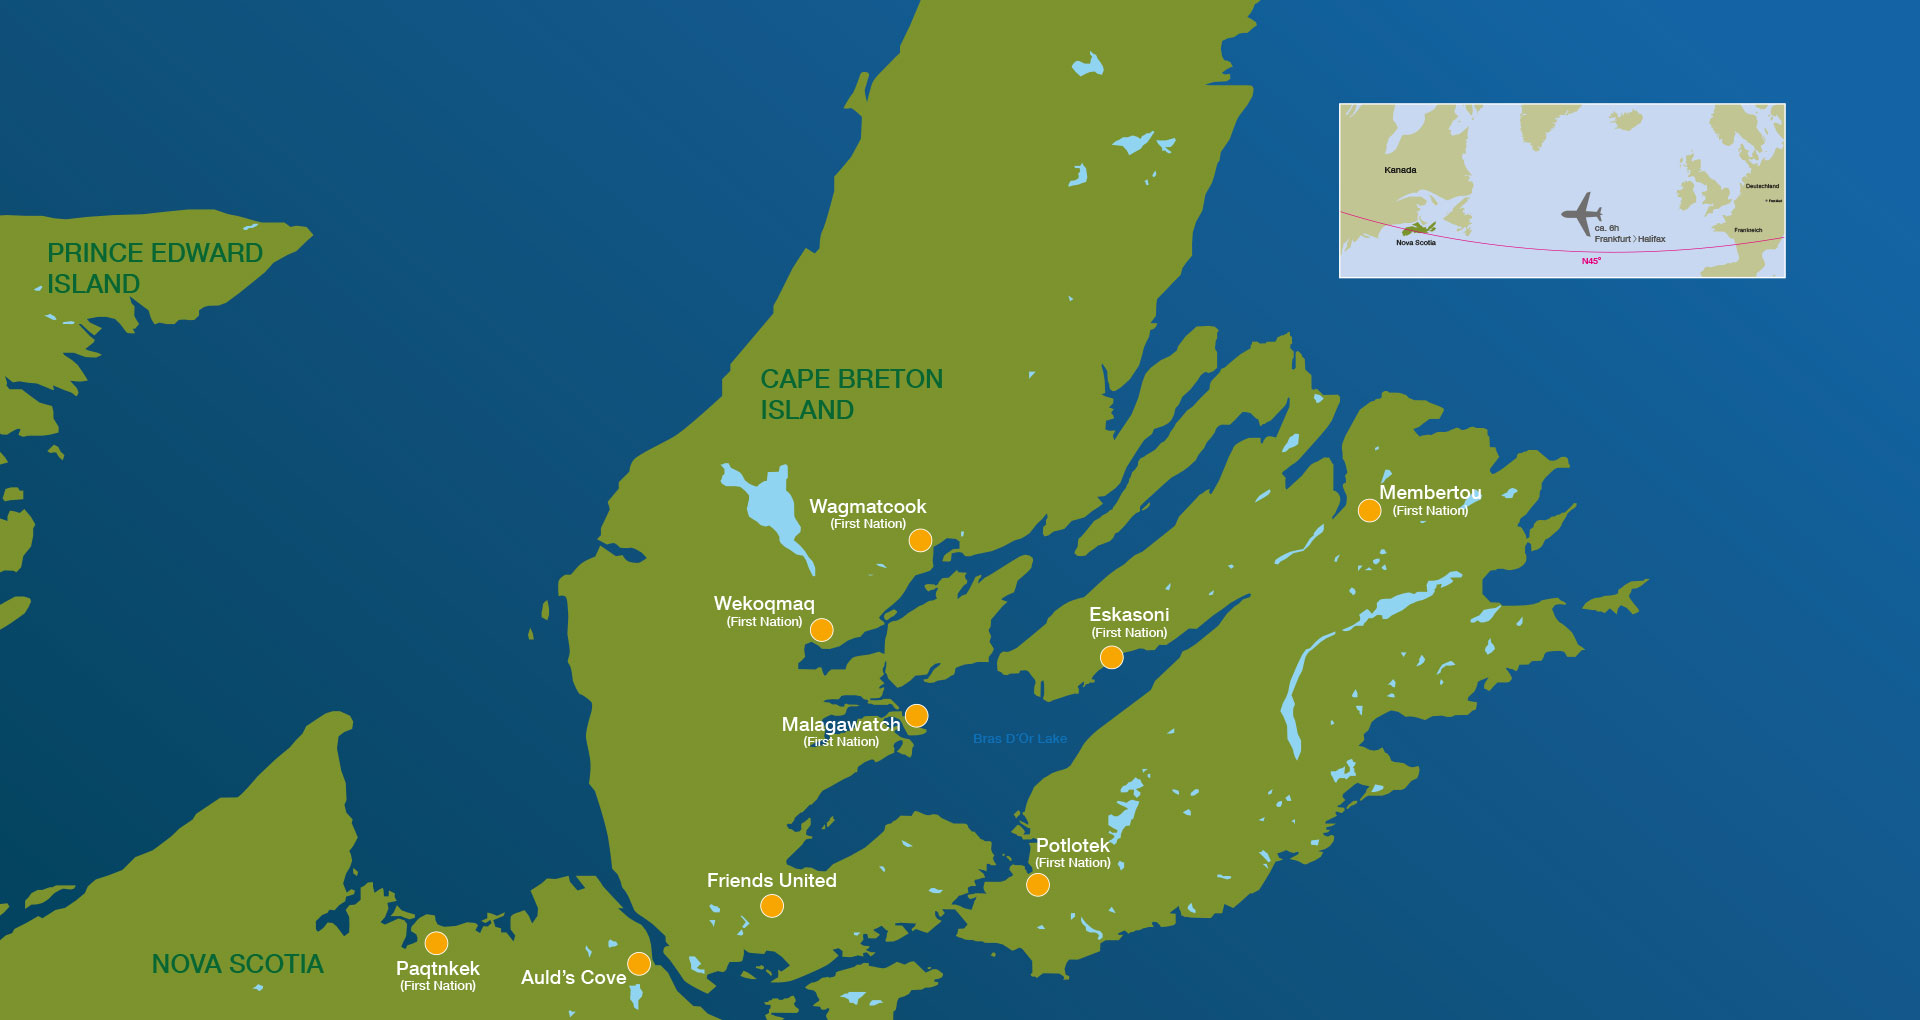 Karte von Nova Scotia und Prince Edward Island mit Markierungen von Friends United.